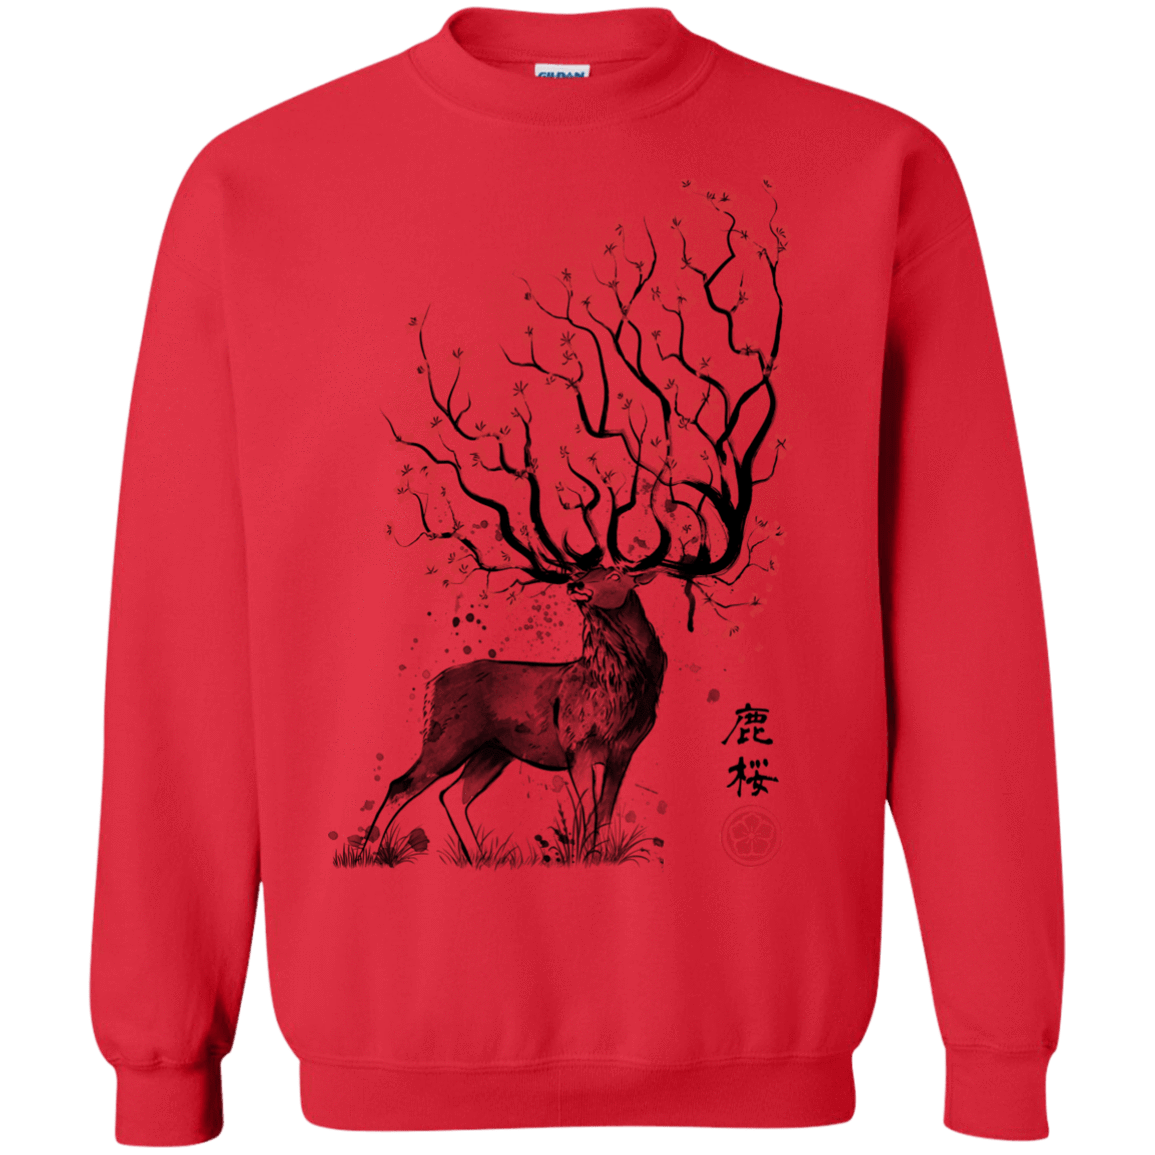 Sweatshirts Red / S Sakura Deer Crewneck Sweatshirt